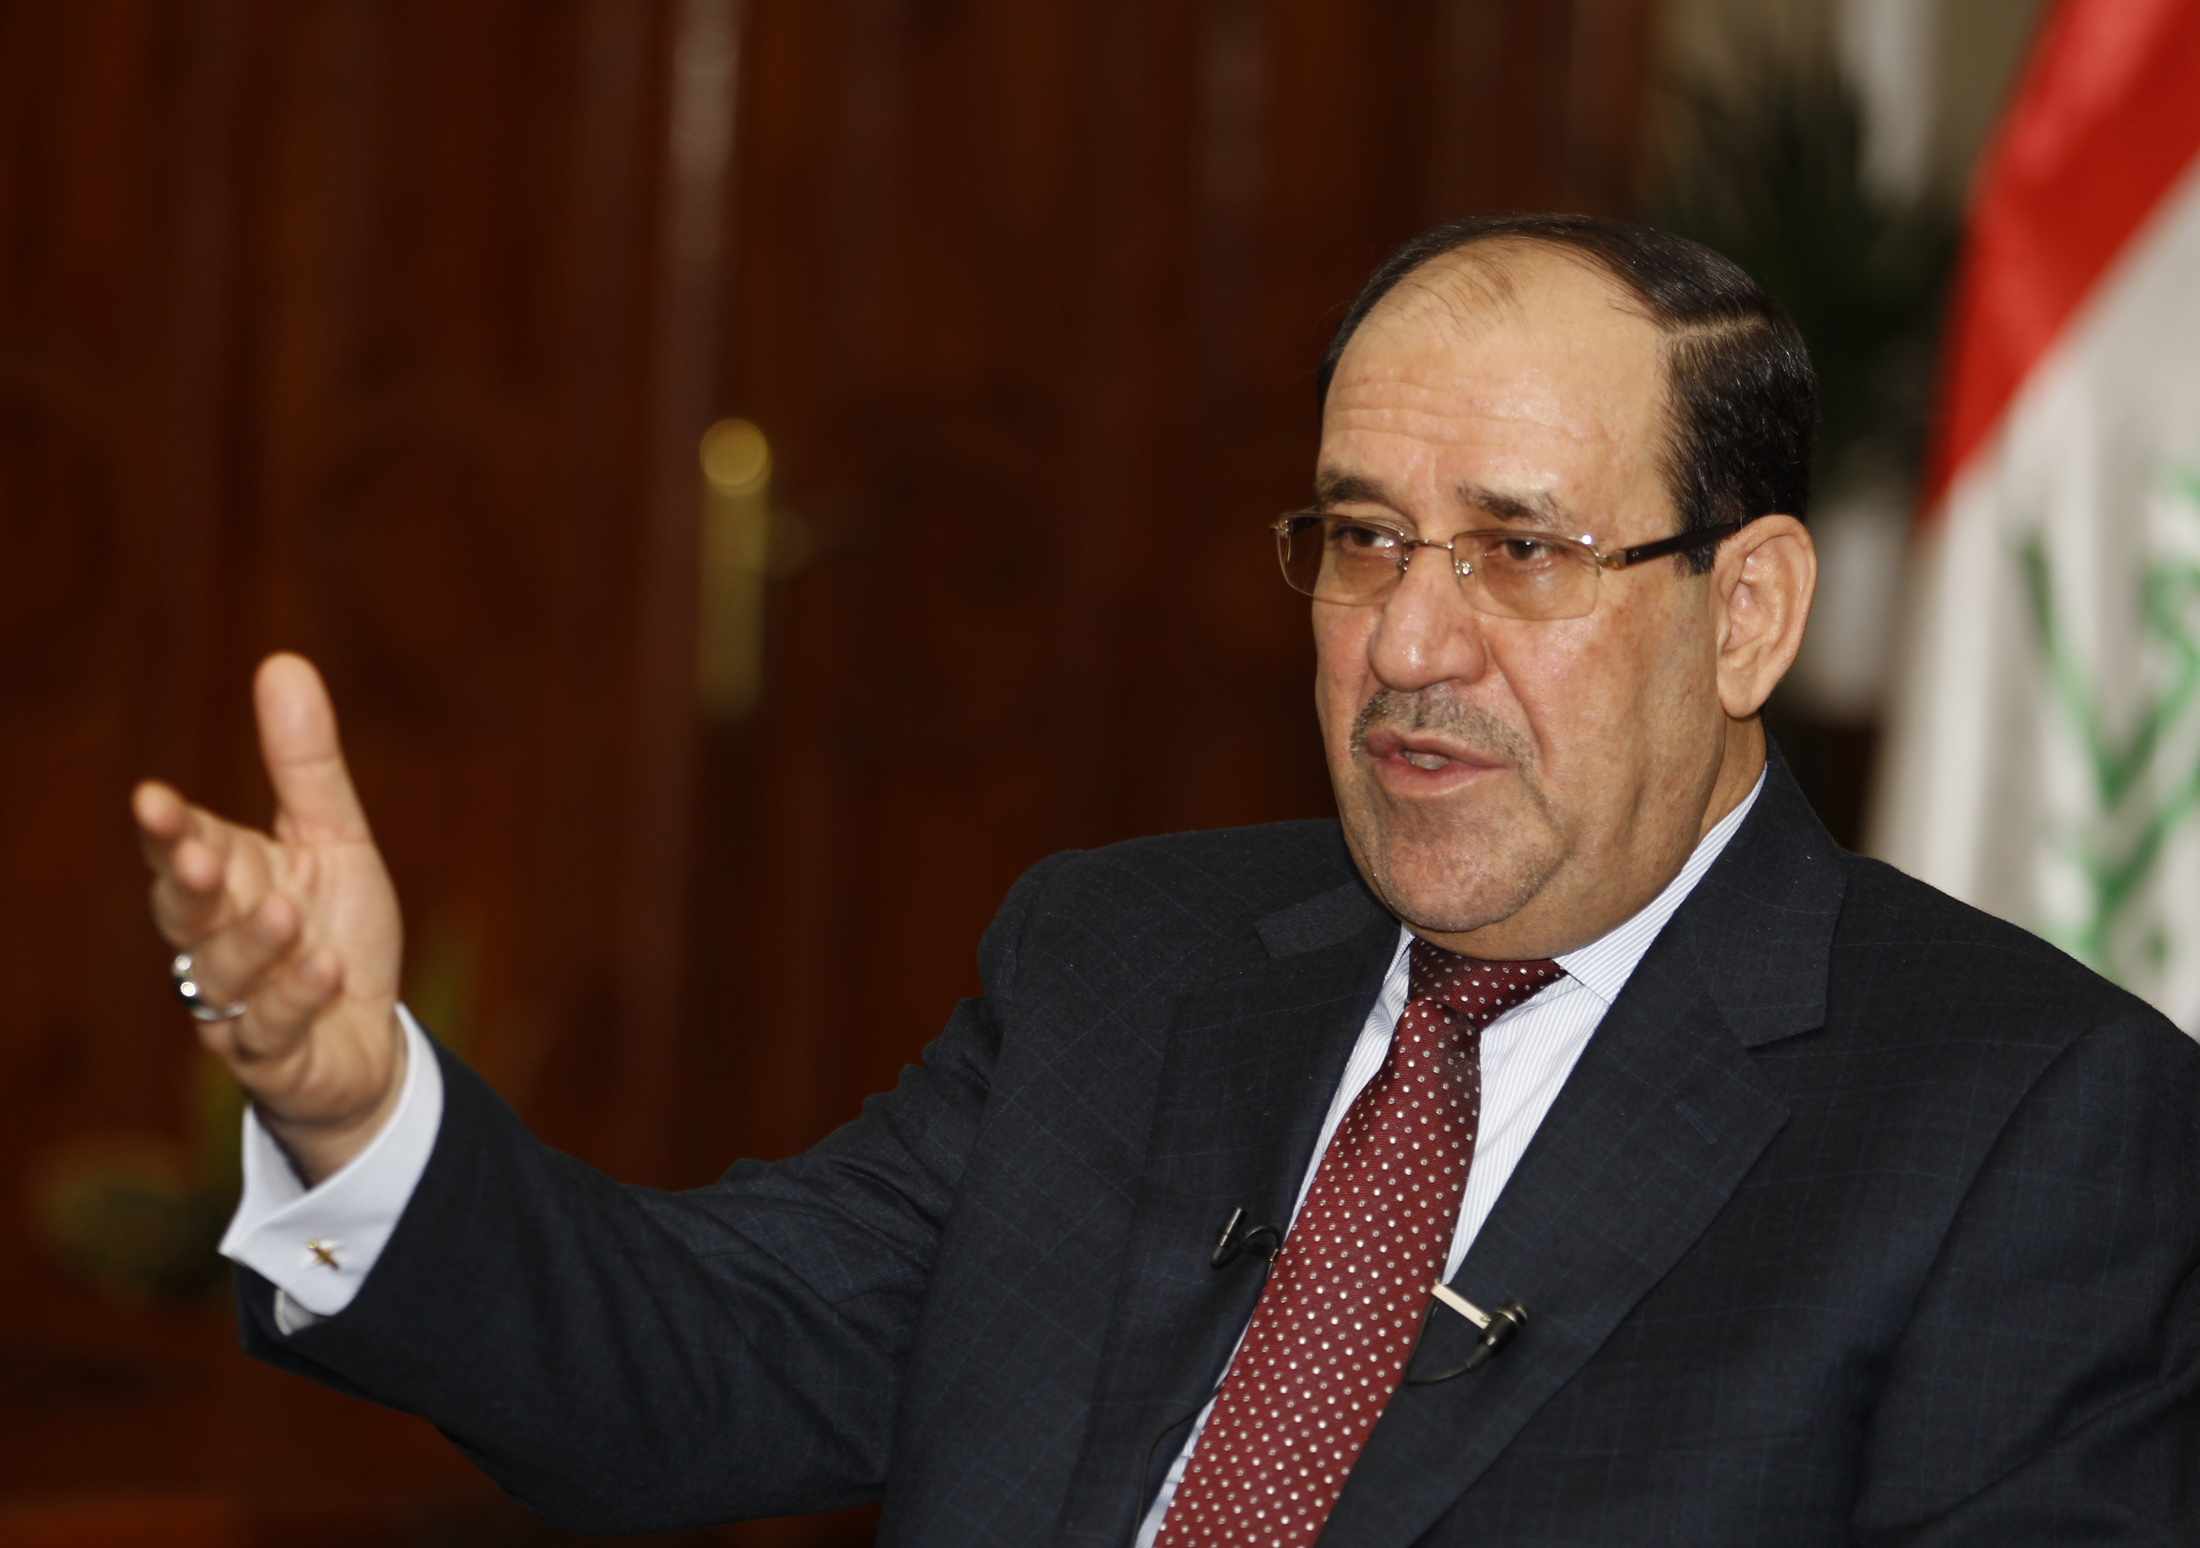 El primer ministro iraquí denunciará al presidente de Irak,Fuad Masum, por violar la constitución. (Foto: Reuters)